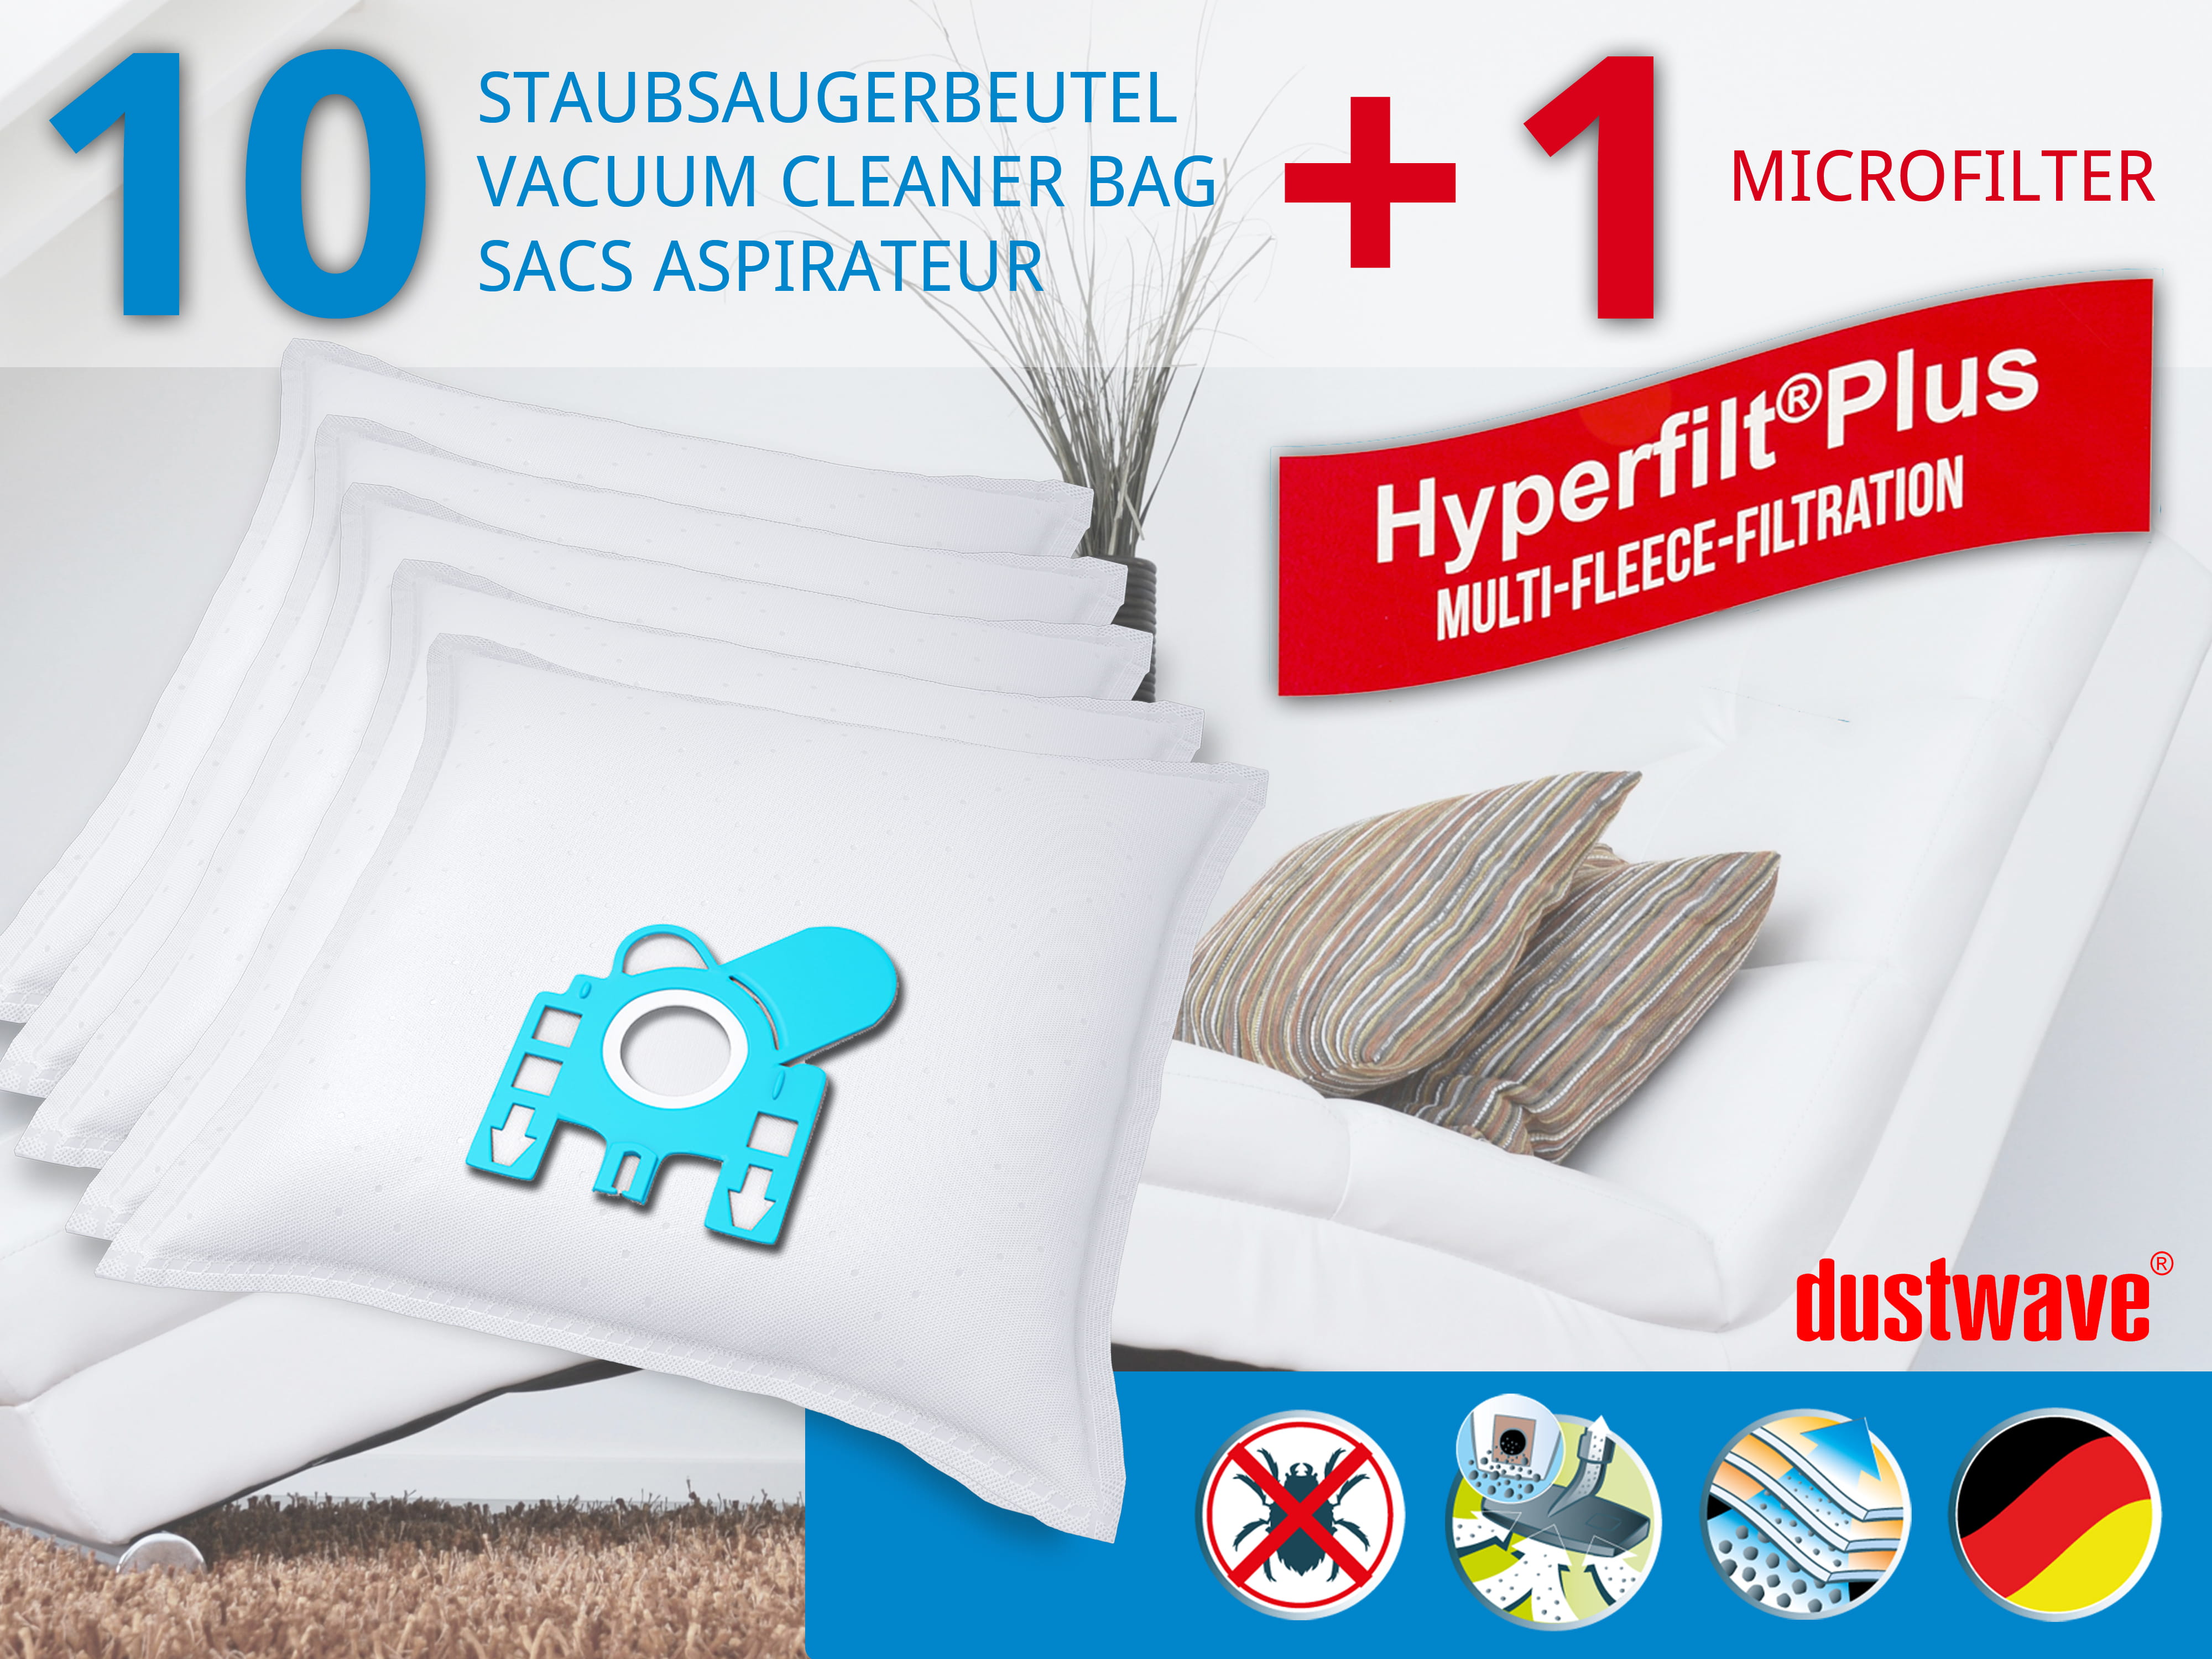 Dustwave® 10 Staubsaugerbeutel für Hoover TFB2011 011 FreeMotion - hocheffizient, mehrlagiges Mikrovlies mit Hygieneverschluss - Made in Germany